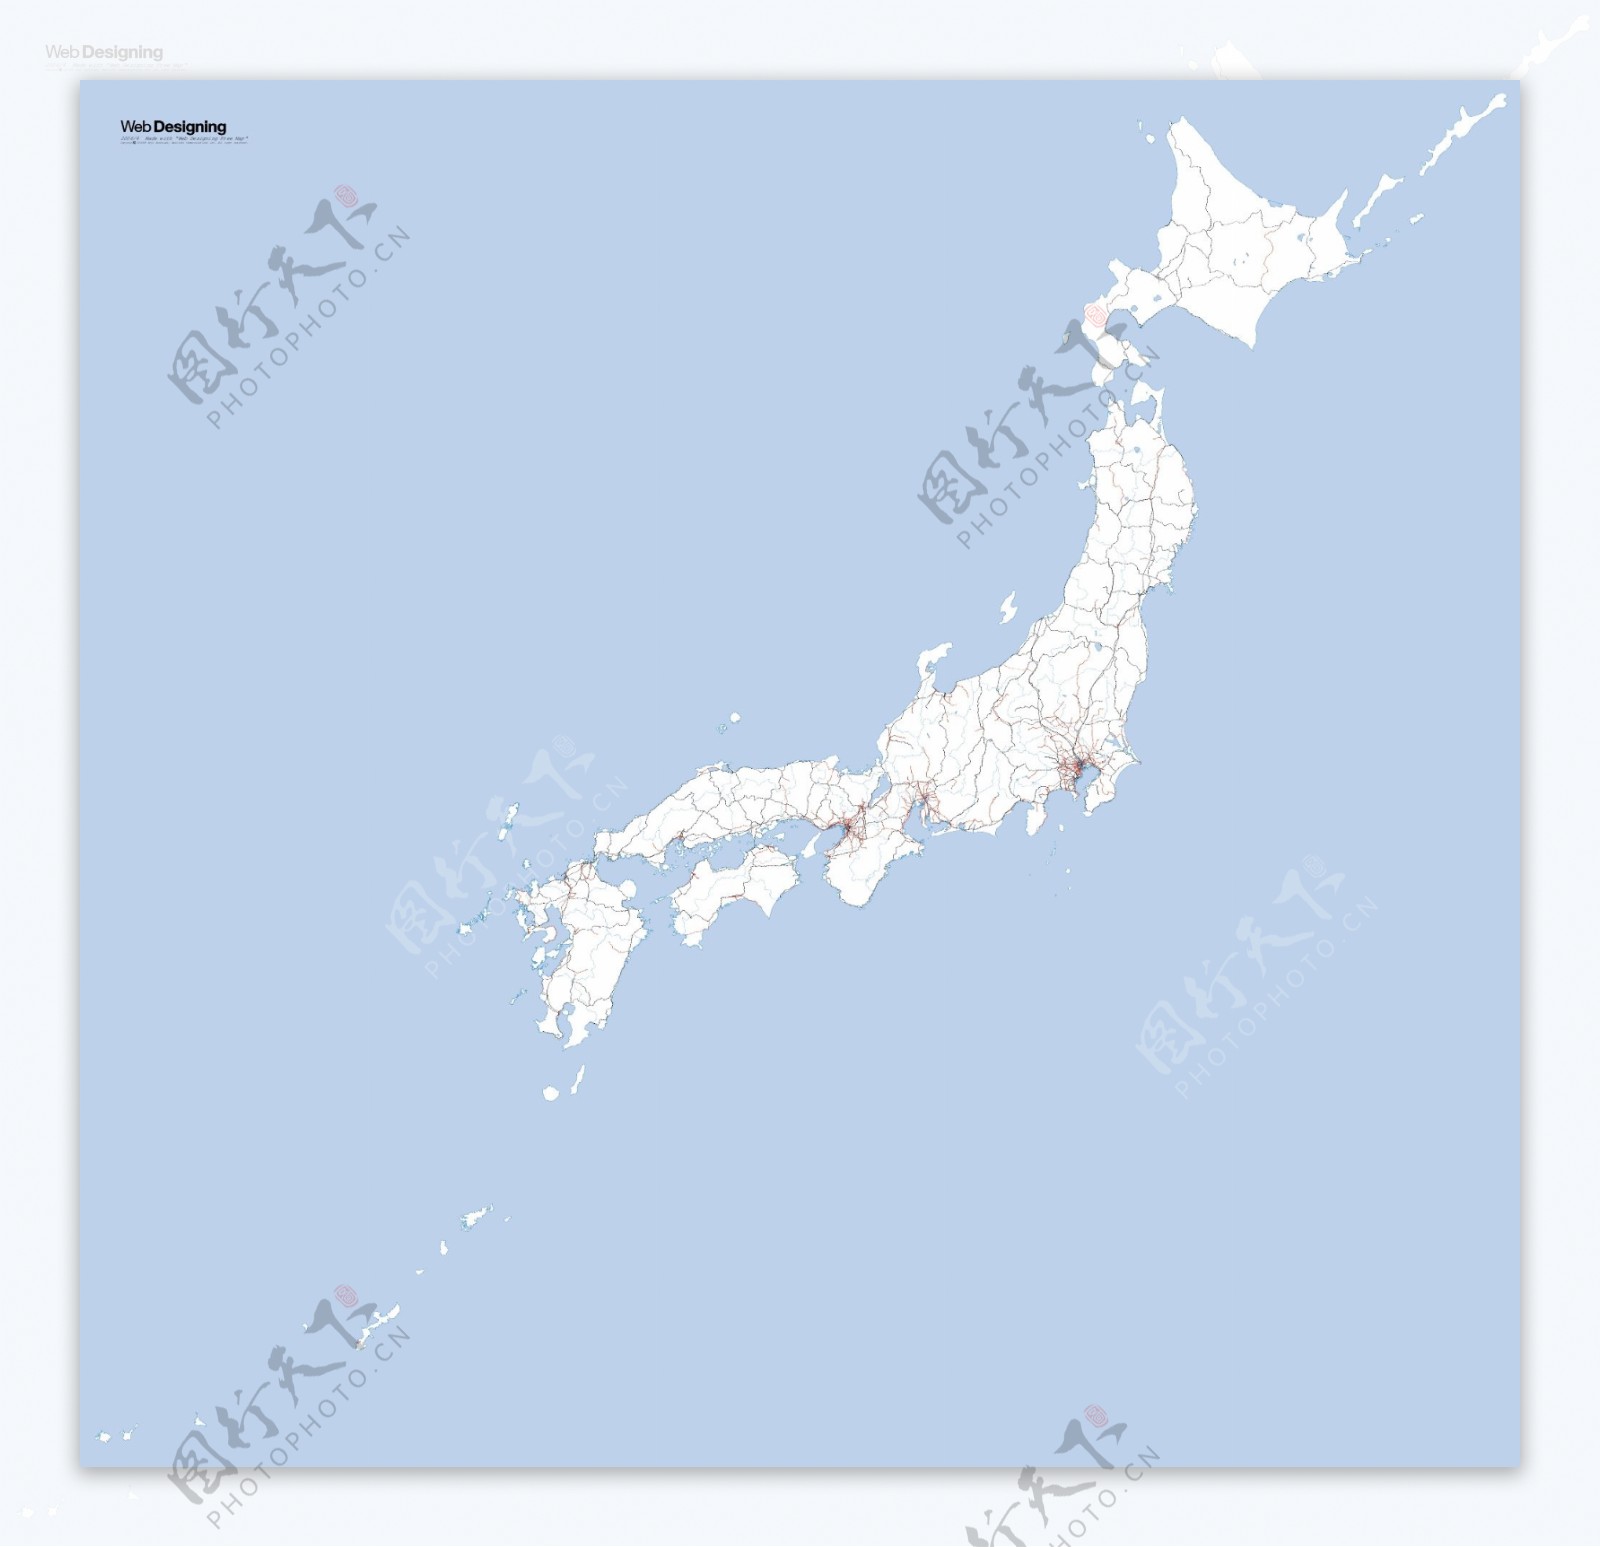 日本地图的铁路网络矢量素材